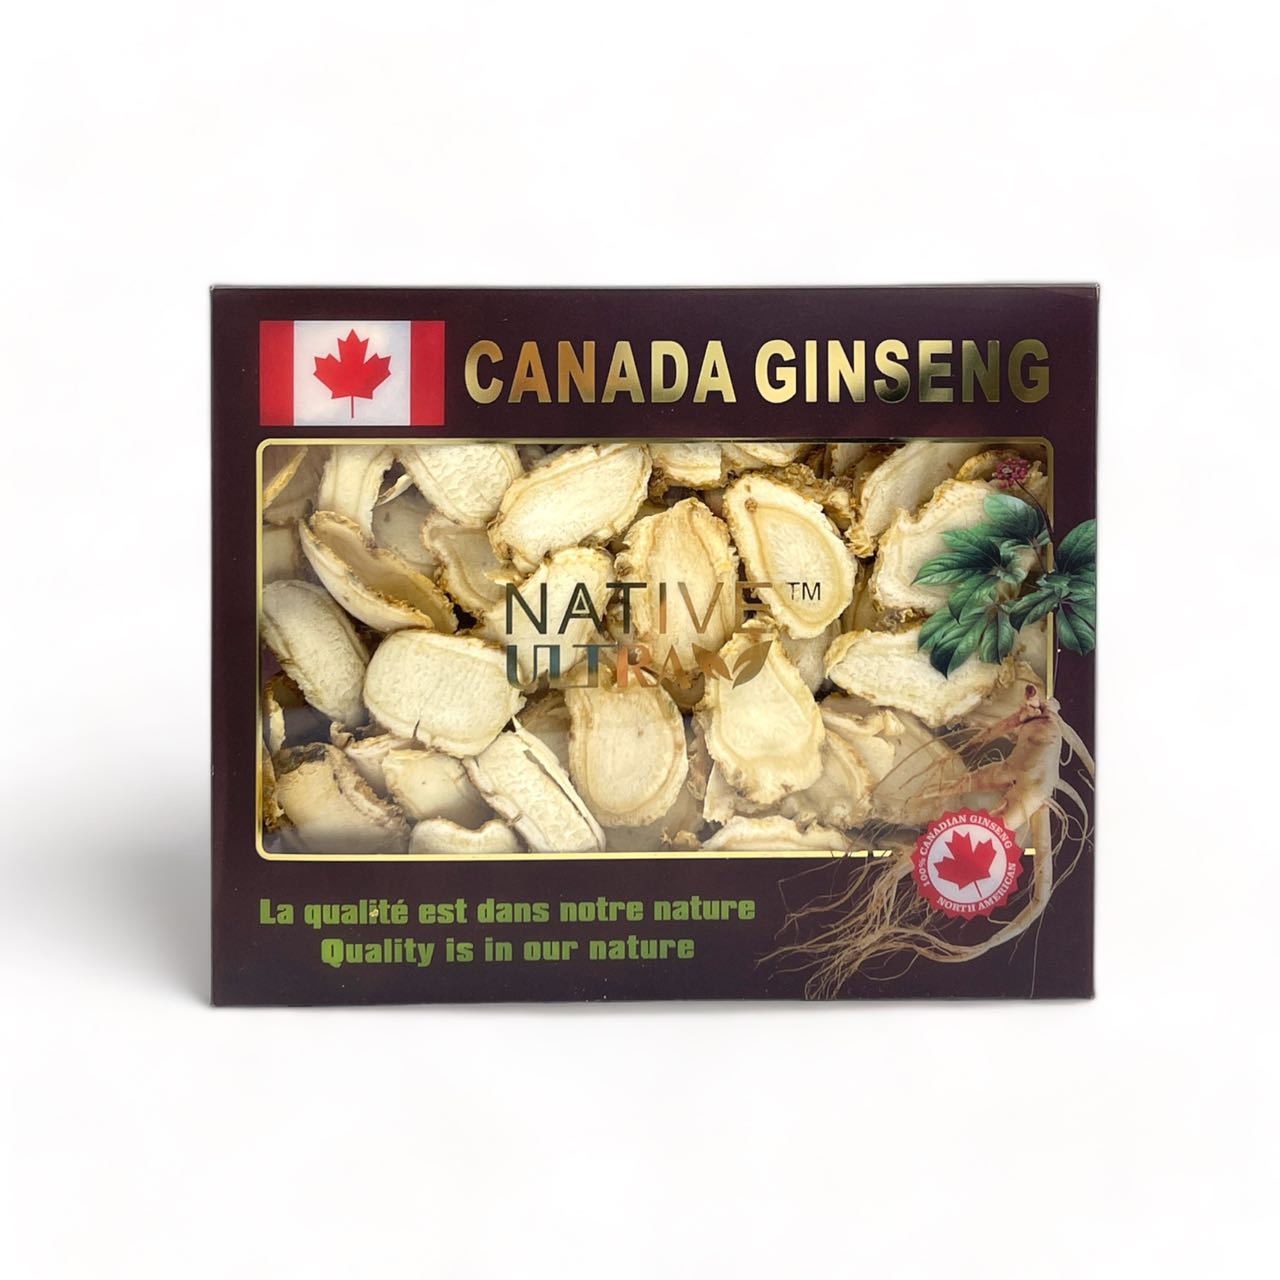 "NATIVE ULTRA" Láminas de Ginseng Canadiense 80g/caja